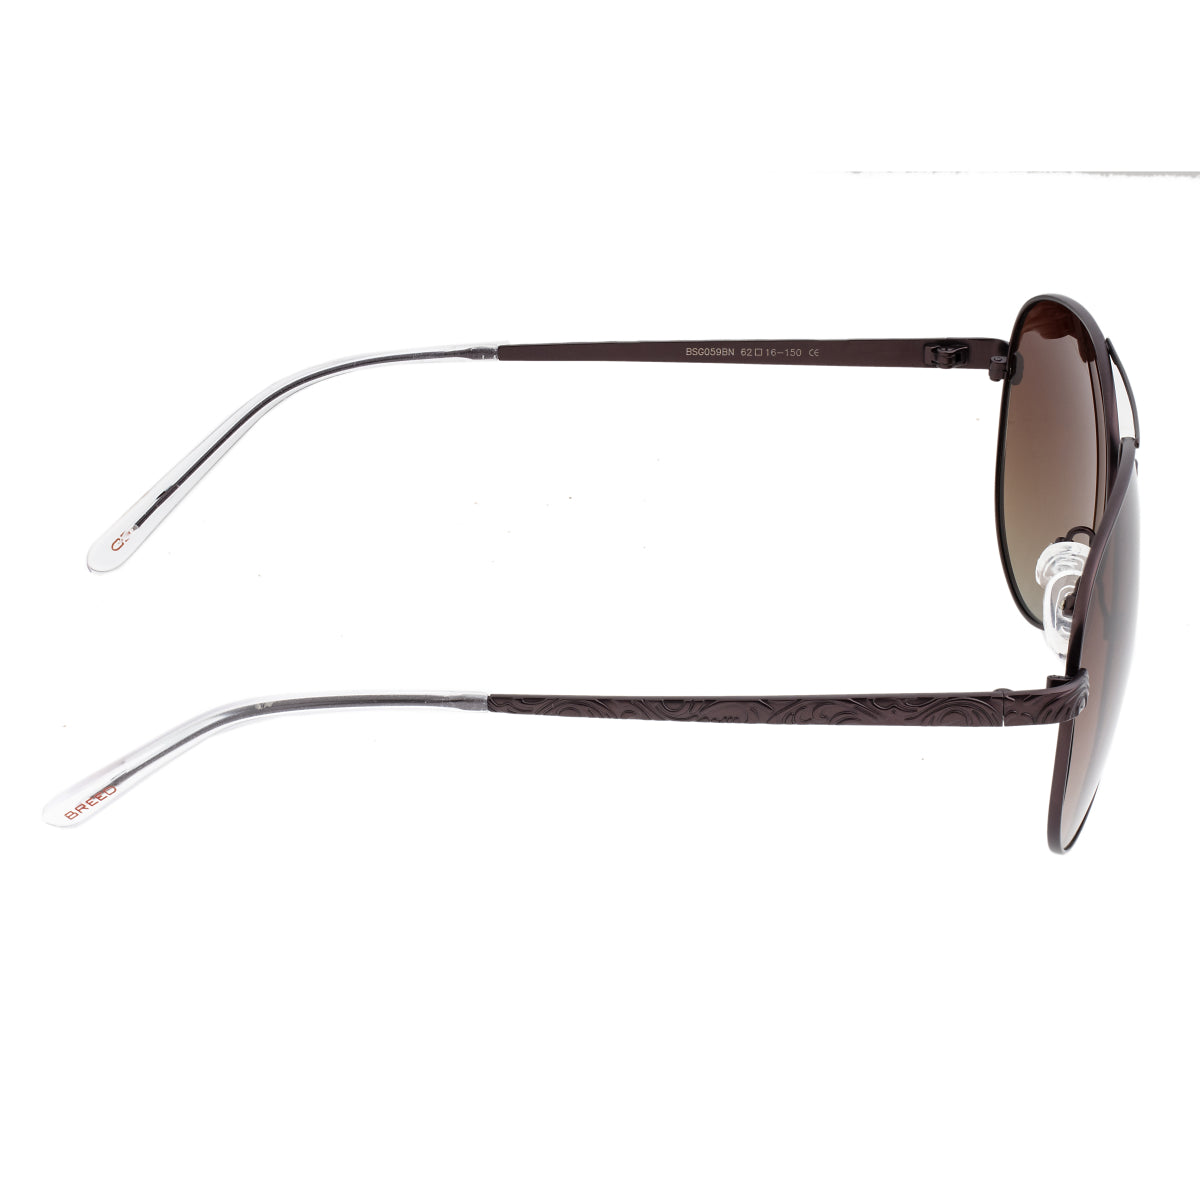 Breed Void Titanium Polarized Sunglasses - Brown/Brown - BSG059BN